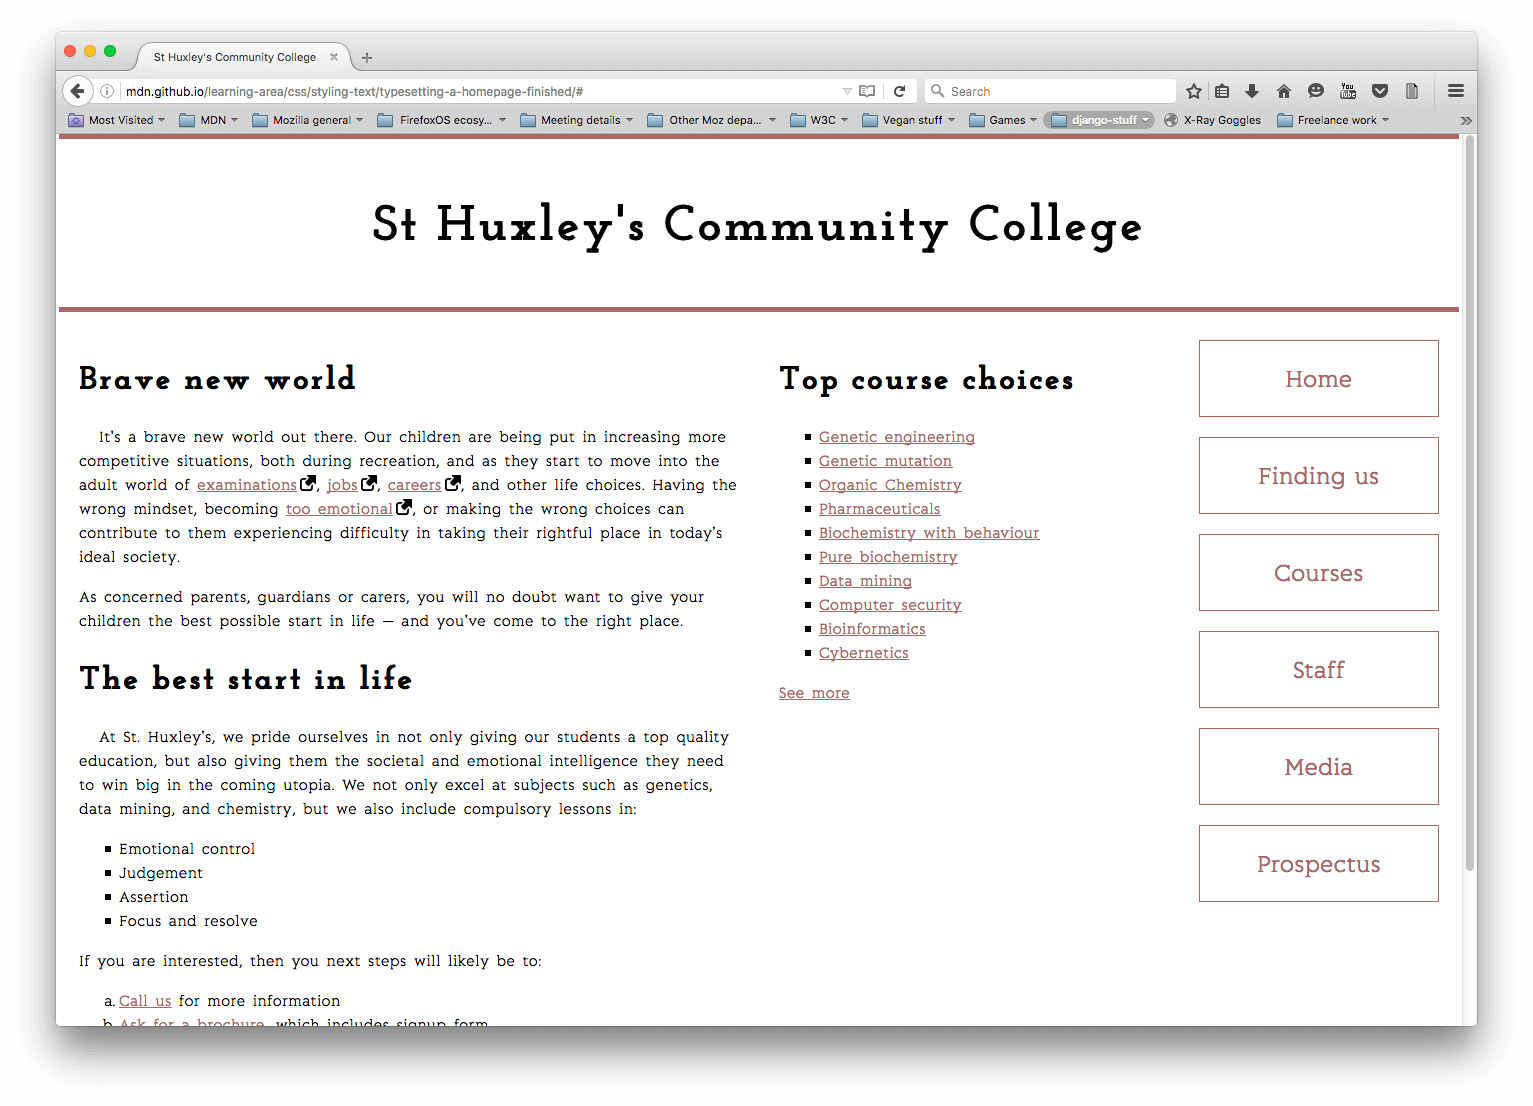 「コミュニティスクールのウェブサイトホームページ」のテキストスタイル設定評価のデザイン完了画面。見出しは「St Huxley's Community College」となっています。バナーヘッダーとコンテンツを区切る赤い行があります。本文は 3 段組みです。最初の一番広い段組みには、学生にとってのカレッジの重要性を示唆するいくつかの段があります。2 つ目の段組みには、カレッジが提供するトップコースの選択肢へのリンクのリストがあります。3 つ目の段組みには、ウェブサイトのさまざまな節へのリンクが長方形の輪郭線で描かれた縦長のナビゲーションバーがあります。